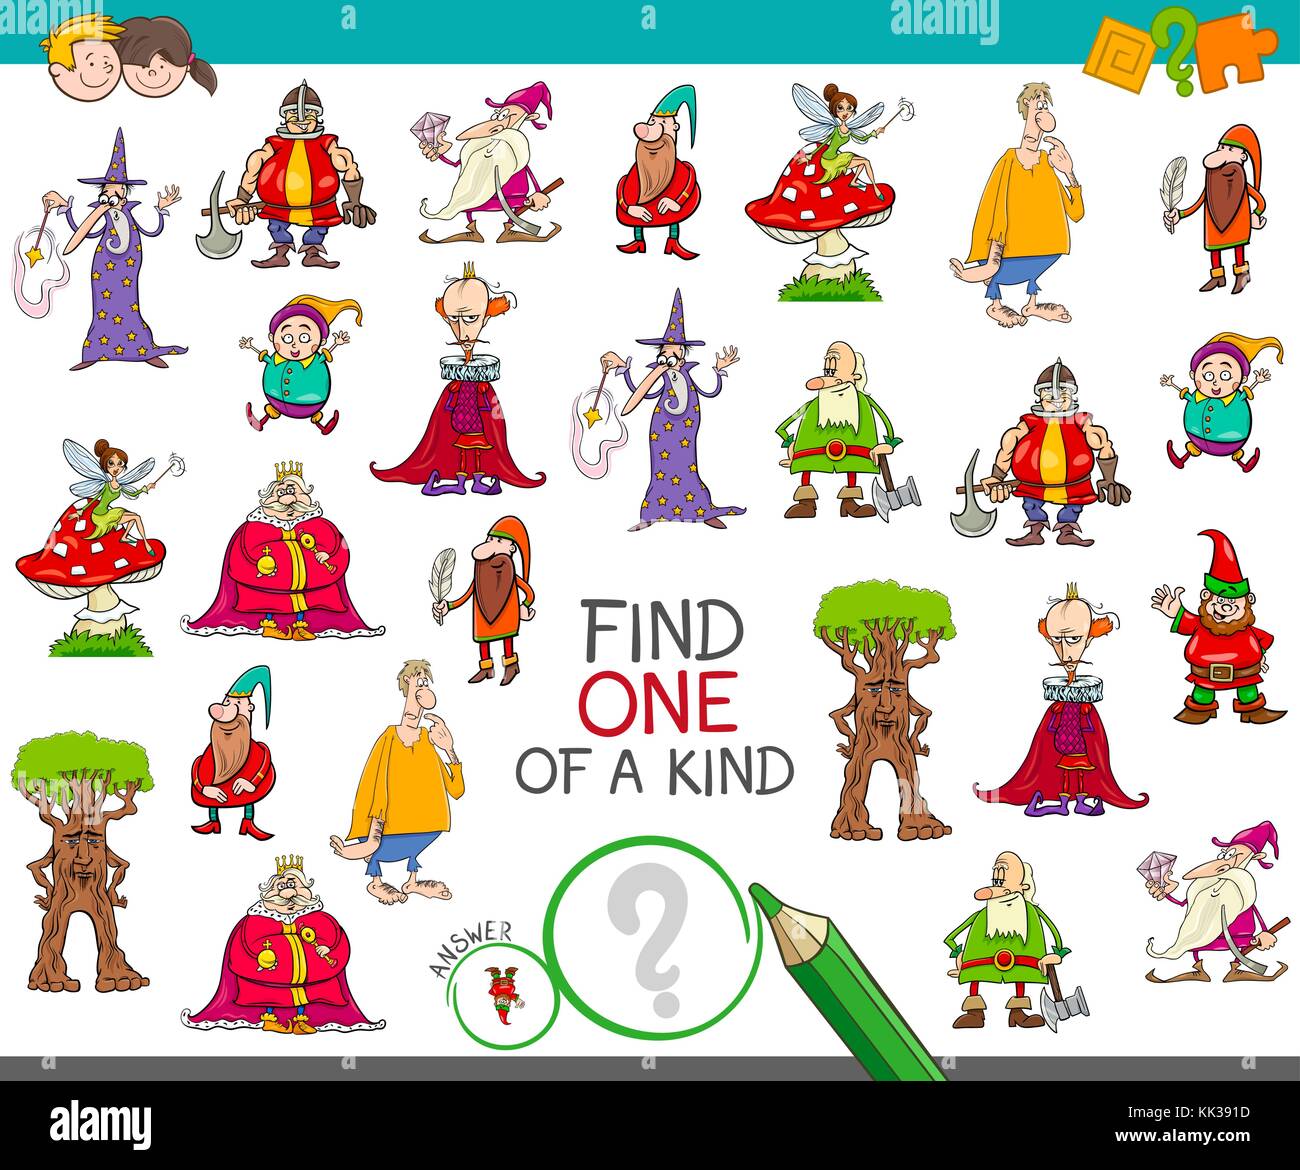 Cartoon illustrazione di trovare un tipo di attività educativa gioco per bambini con personaggi di fantasia Illustrazione Vettoriale